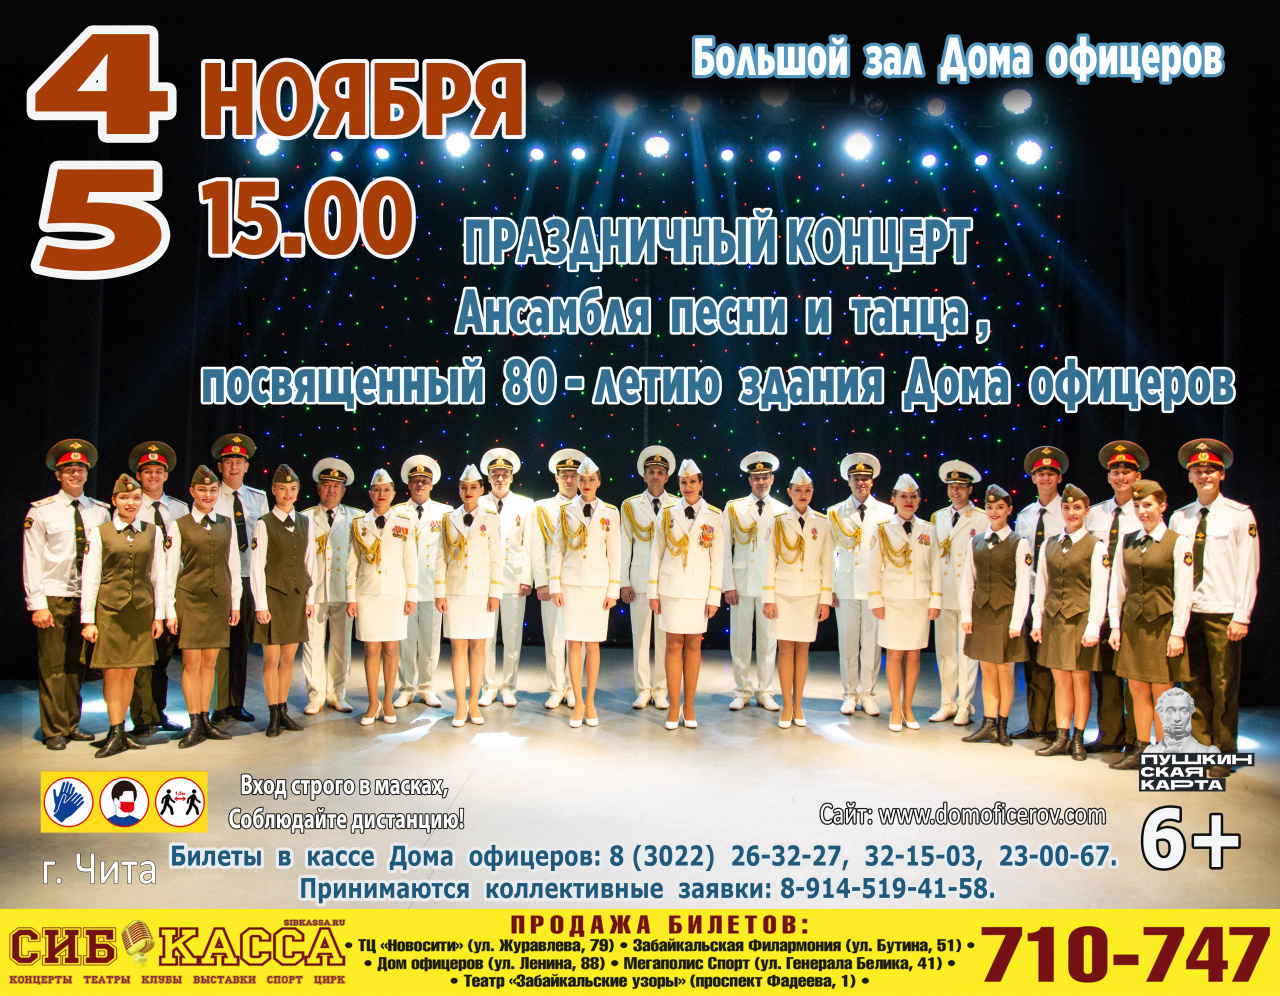 Праздничный концерт Ансамбля песни и танца, посвящённый 80-летию здания Дома офицеров Забайкальского края